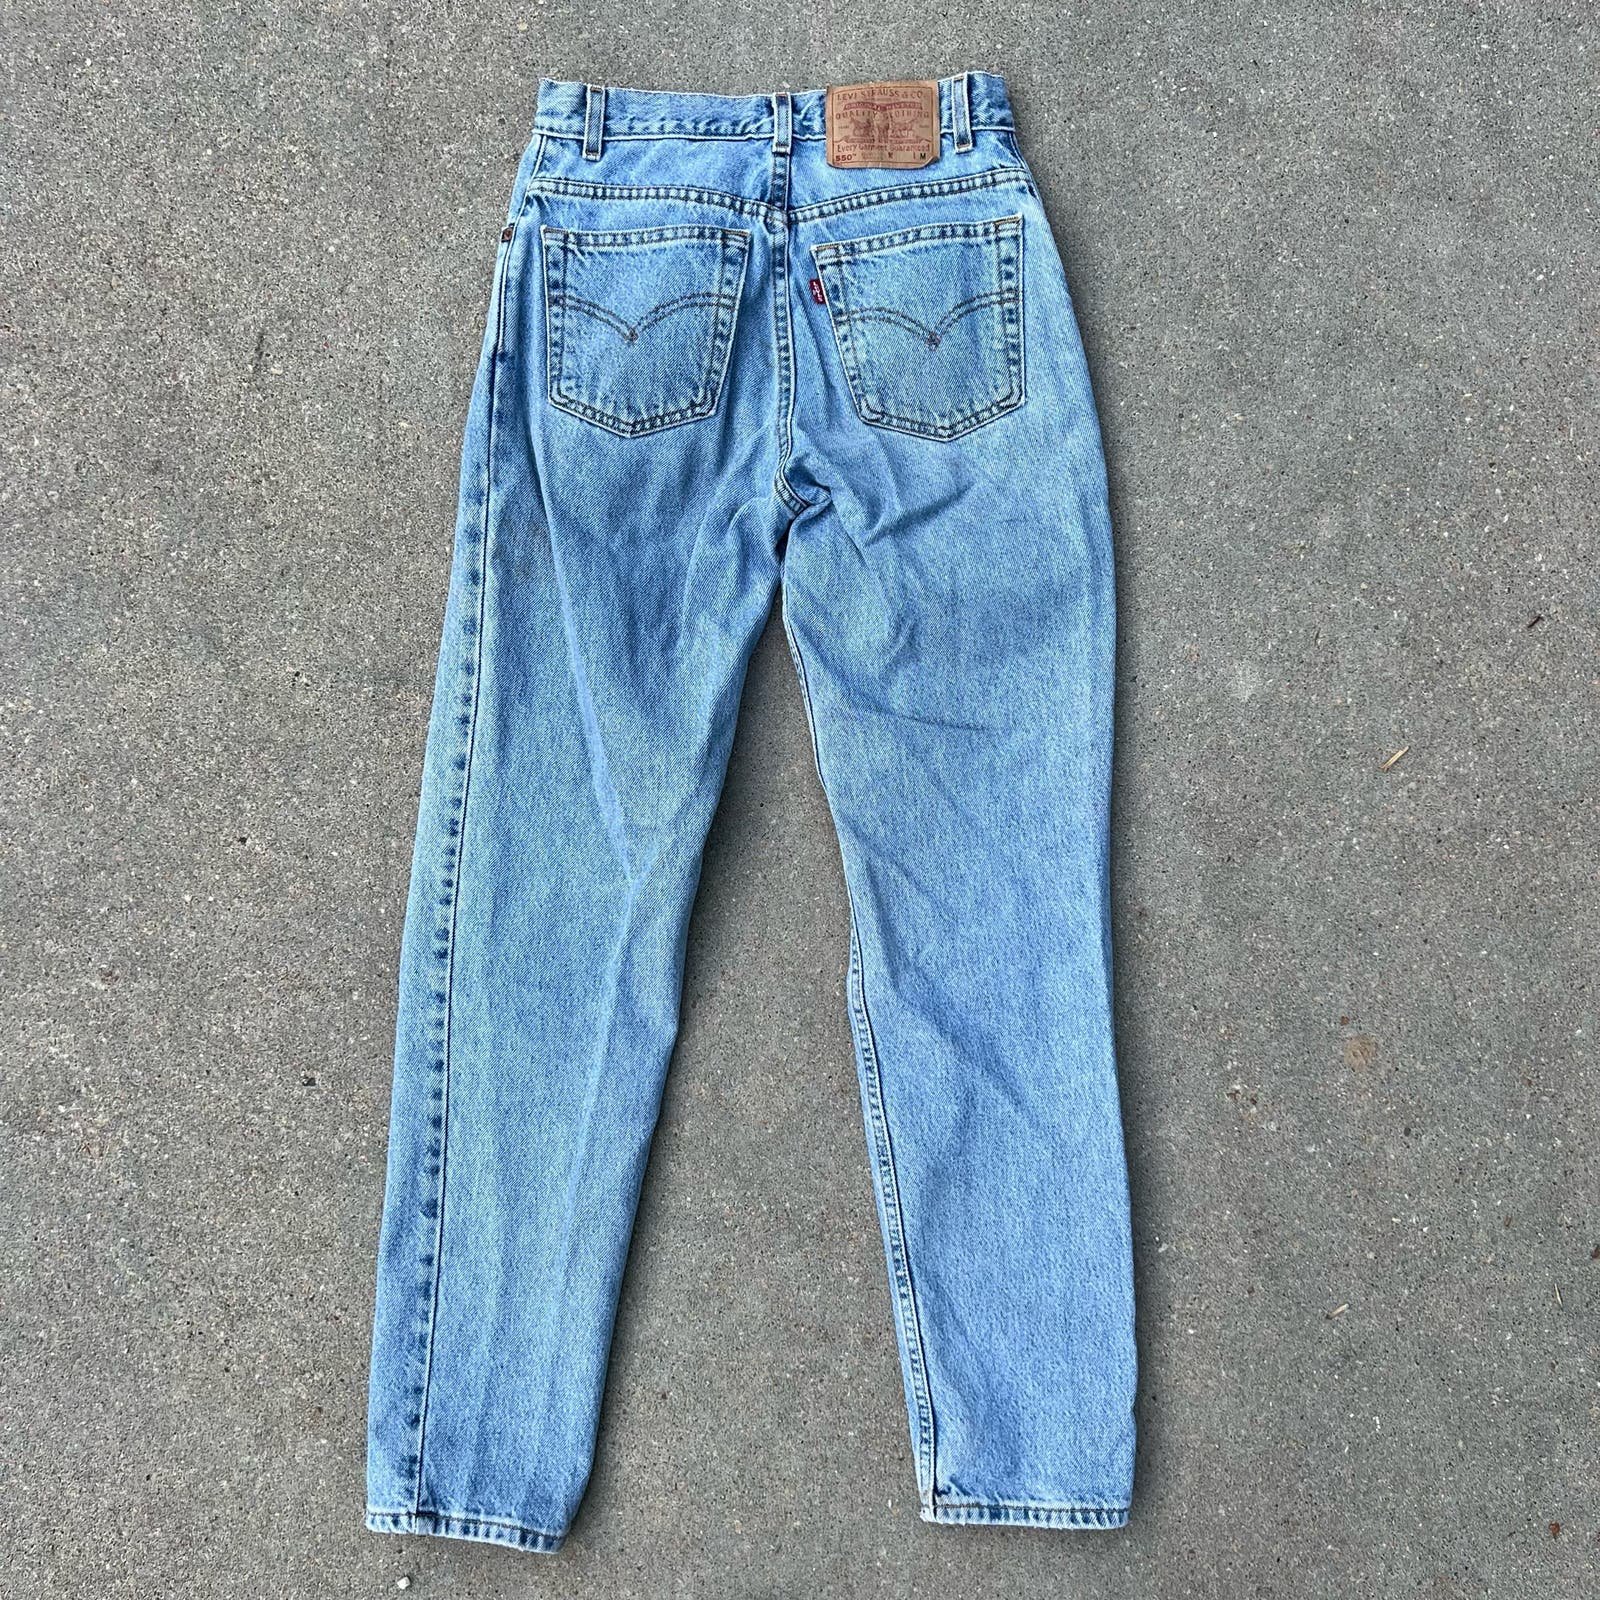 Exclusive Vintage Y2K Levi’s 550 relax fit tapered leg jeans Ladies 5 Jr M osMh2sxEN Hot Sale